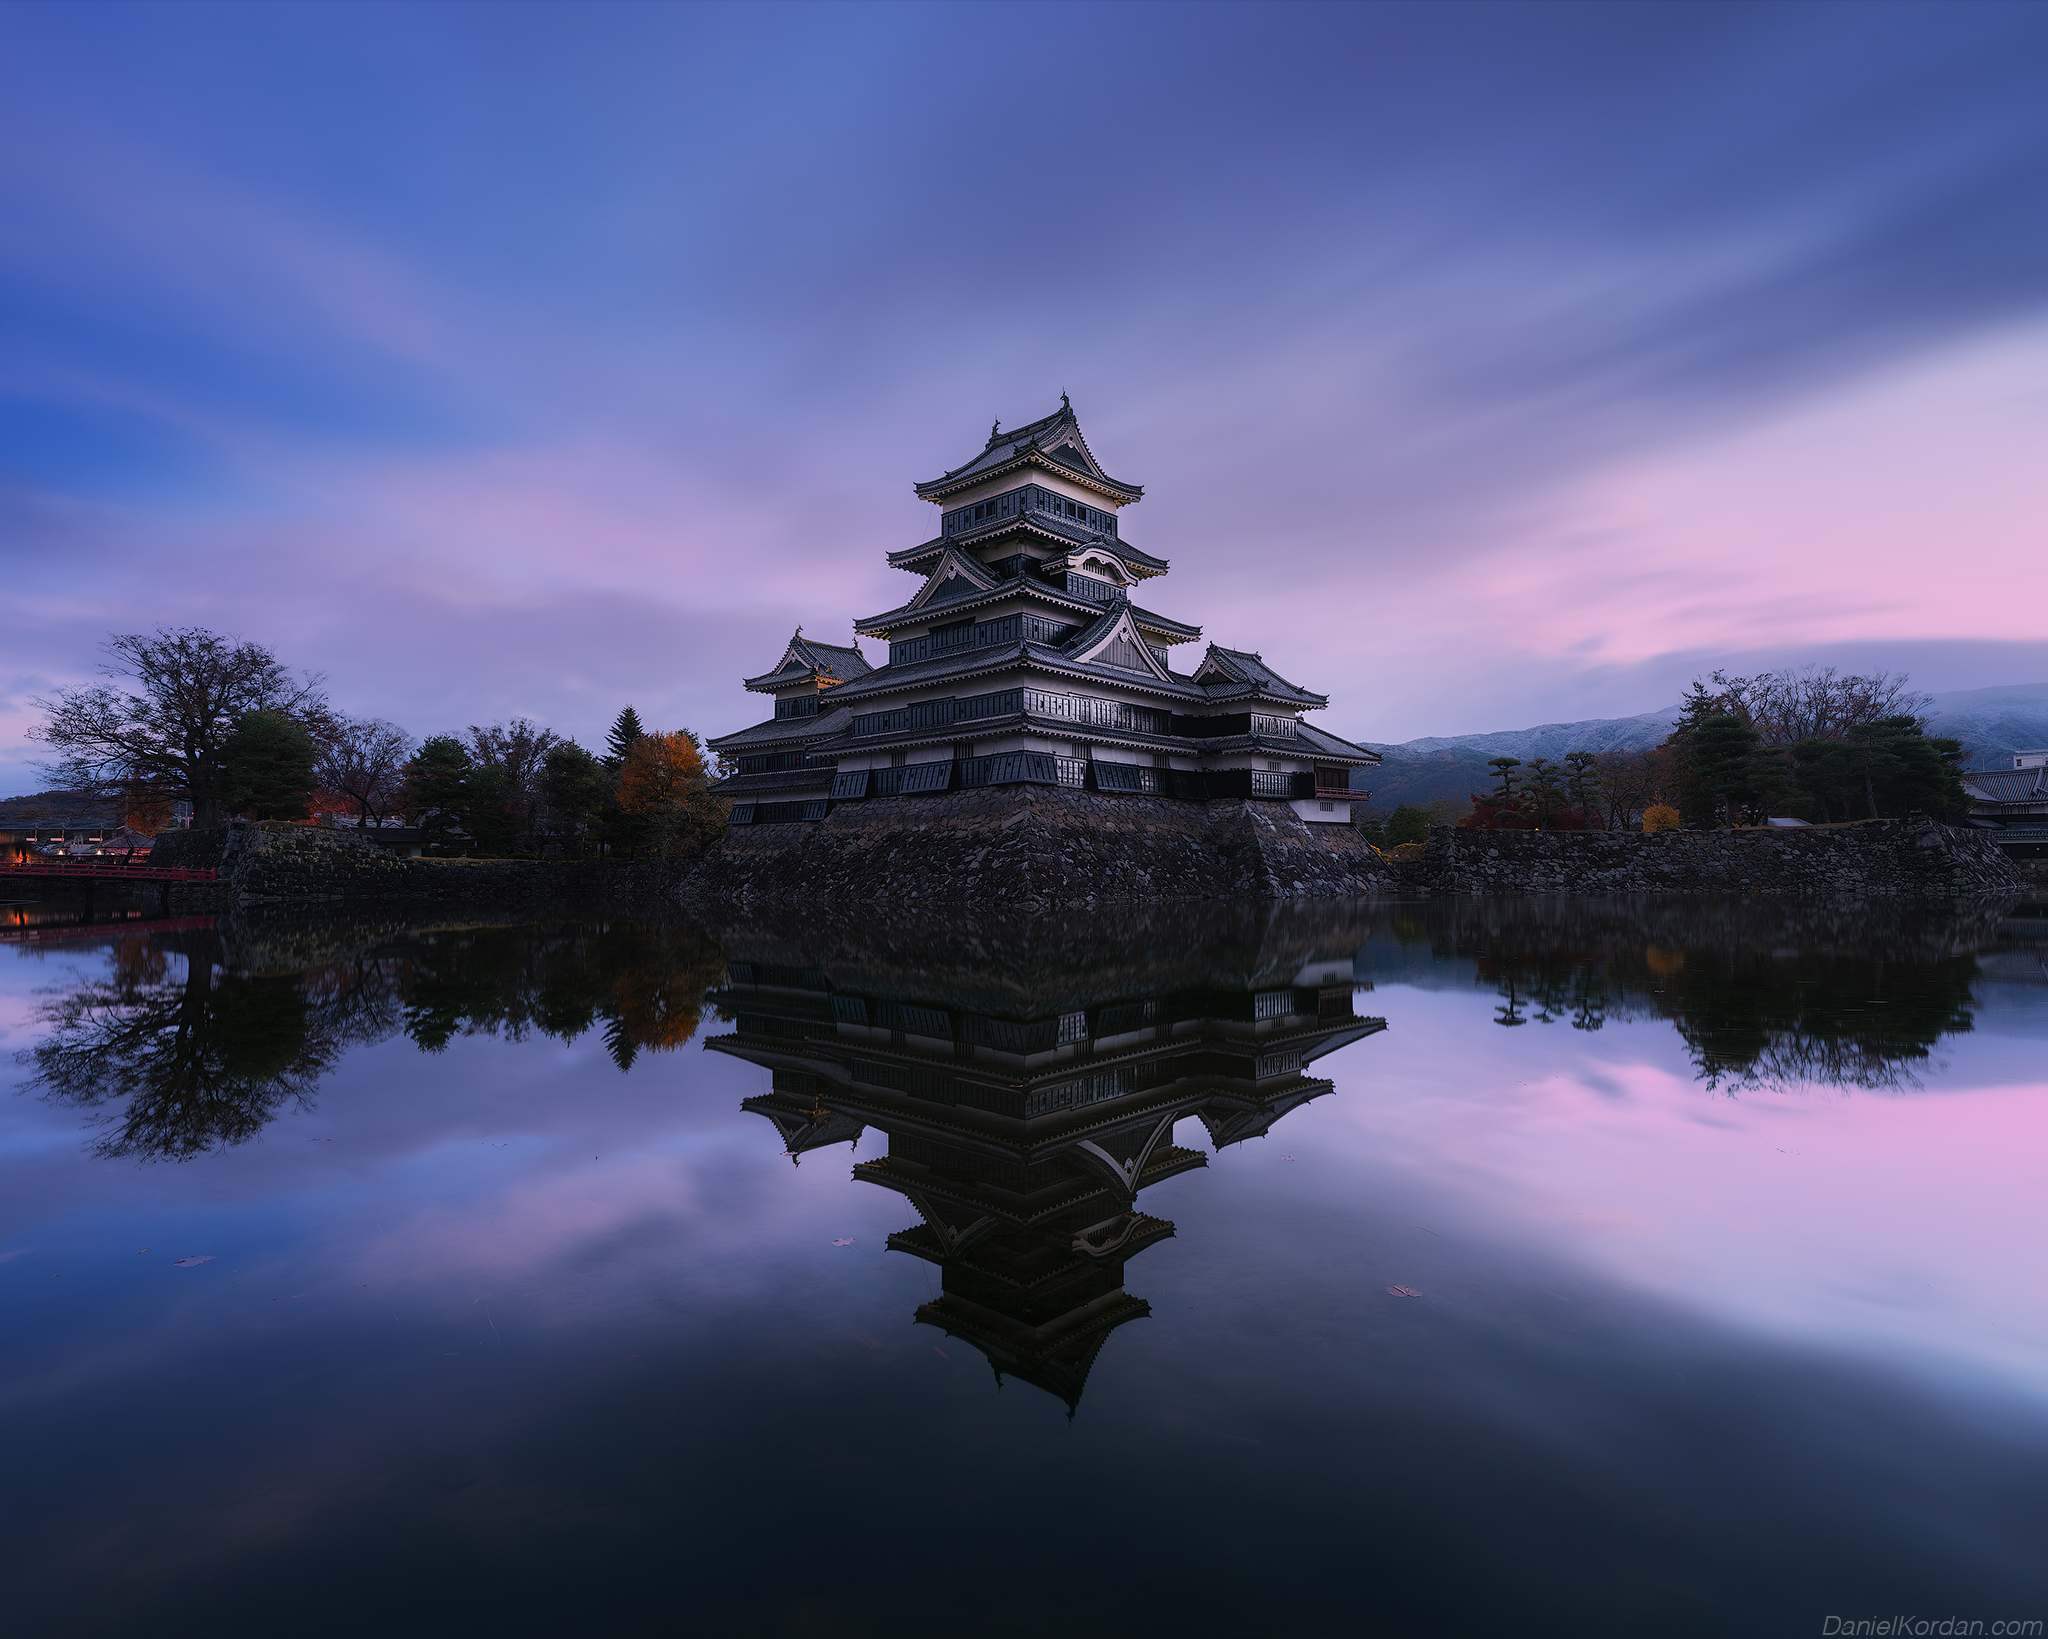 Daniel Kordan Castle Reflection Symmetry Water Matsumoto Castle 2048x1639